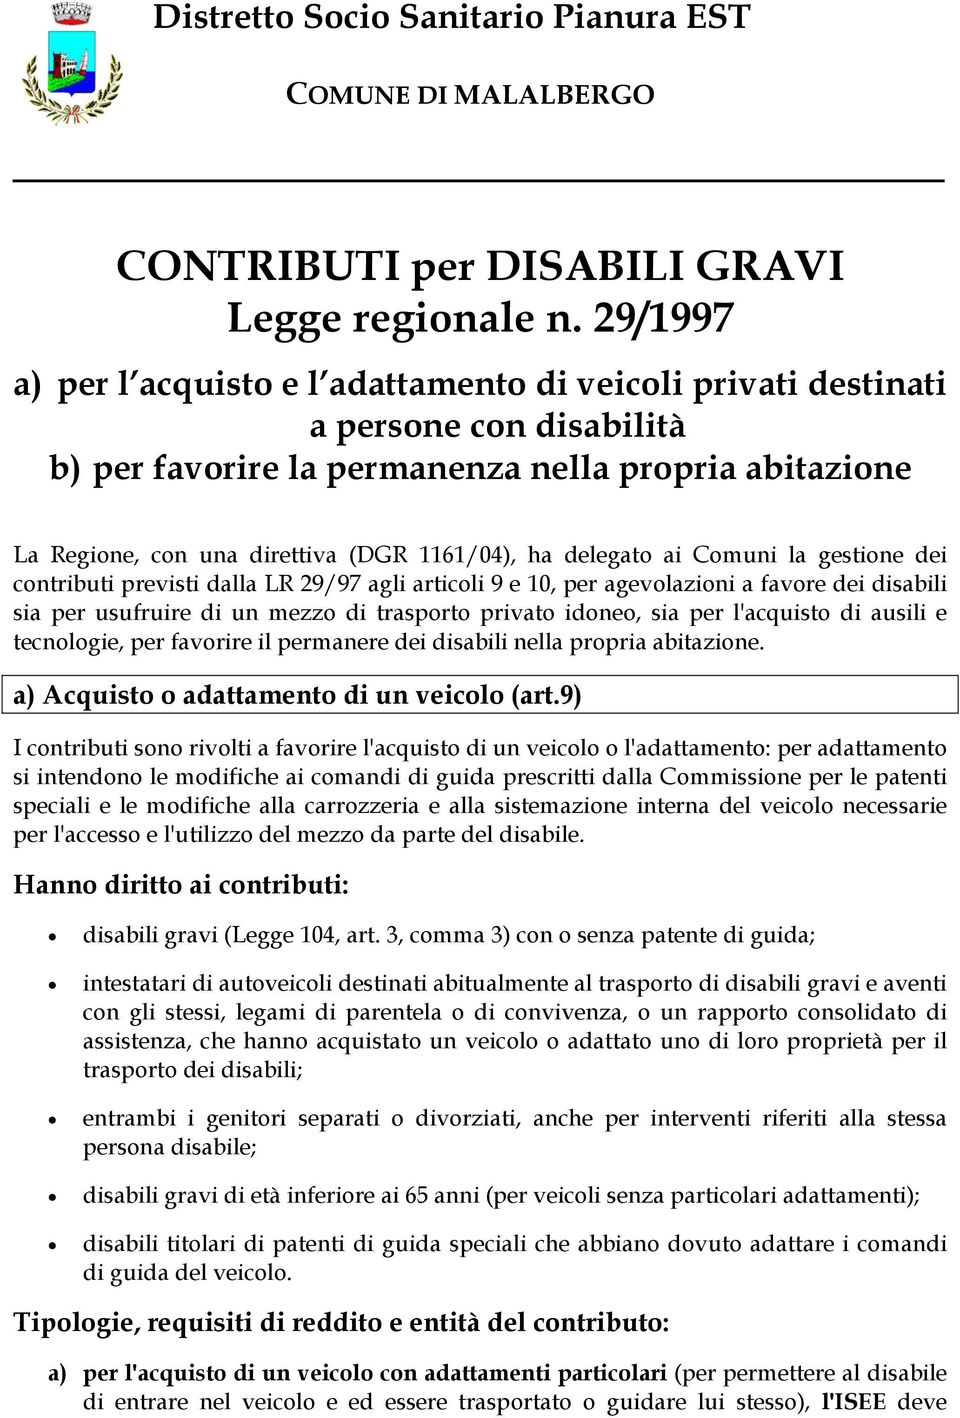 delegato ai Comuni la gestione dei contributi previsti dalla LR 29/97 agli articoli 9 e 10, per agevolazioni a favore dei disabili sia per usufruire di un mezzo di trasporto privato idoneo, sia per